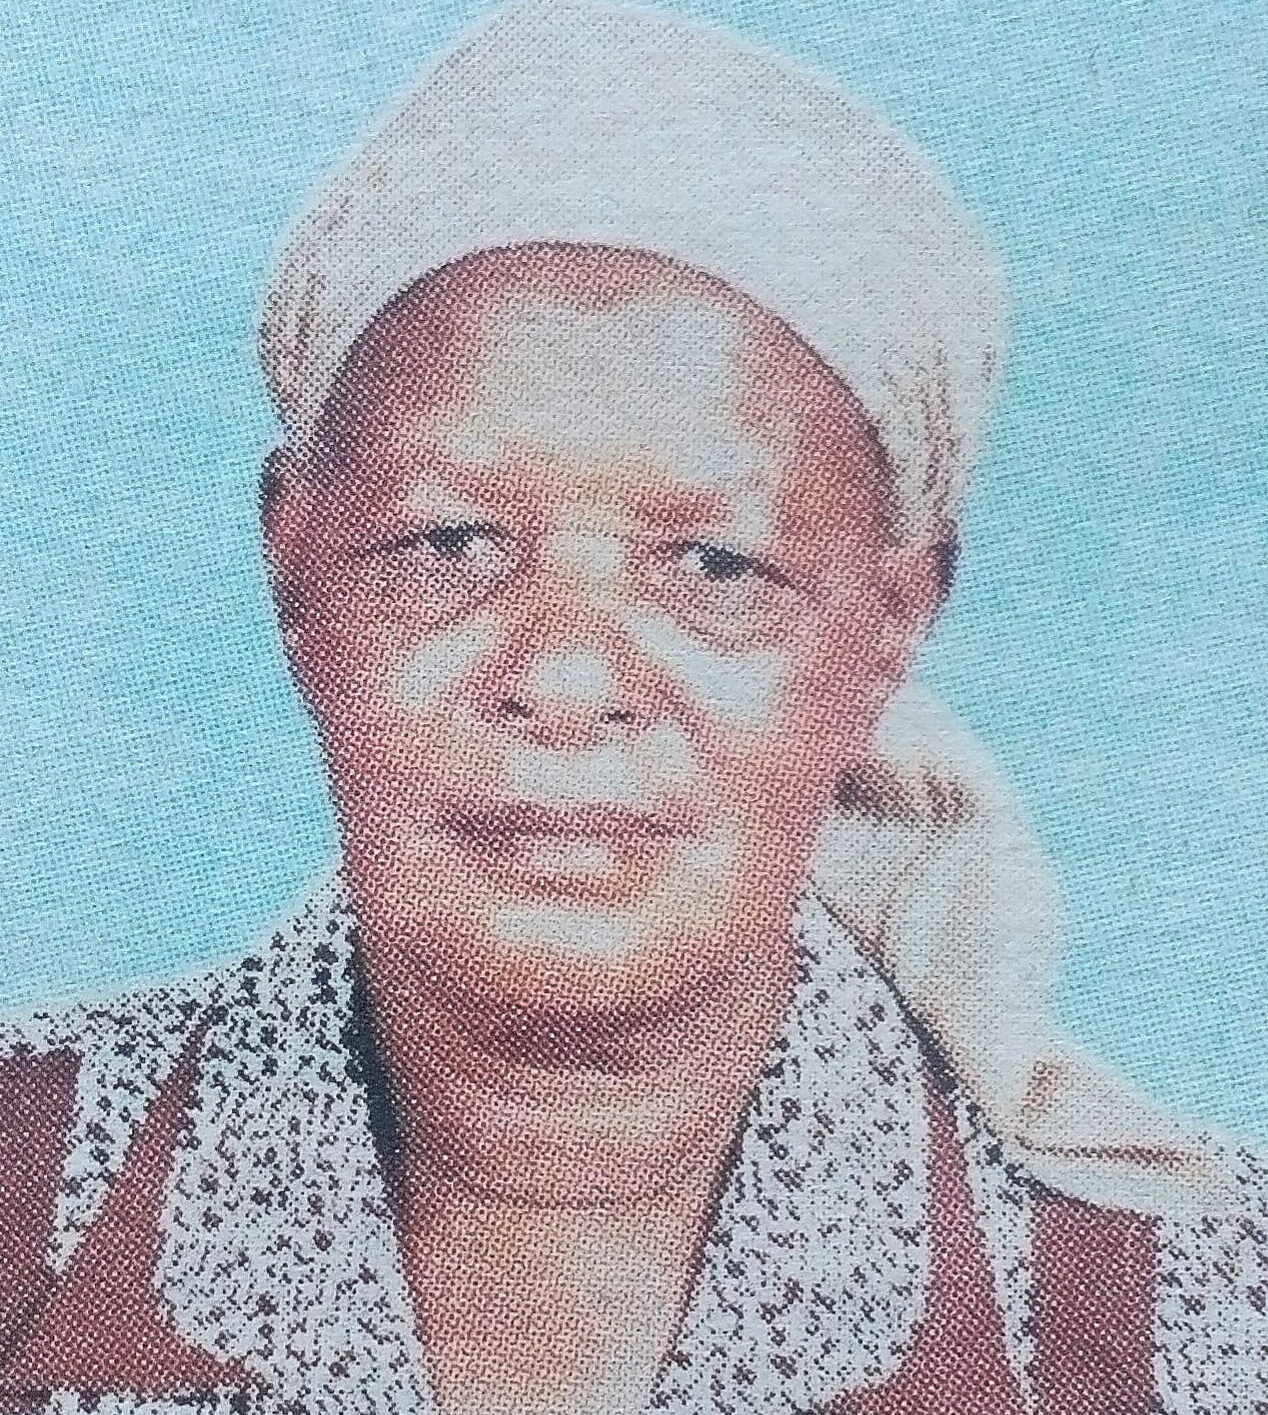 Obituary Image of Hellen Wamuyu Mwaura